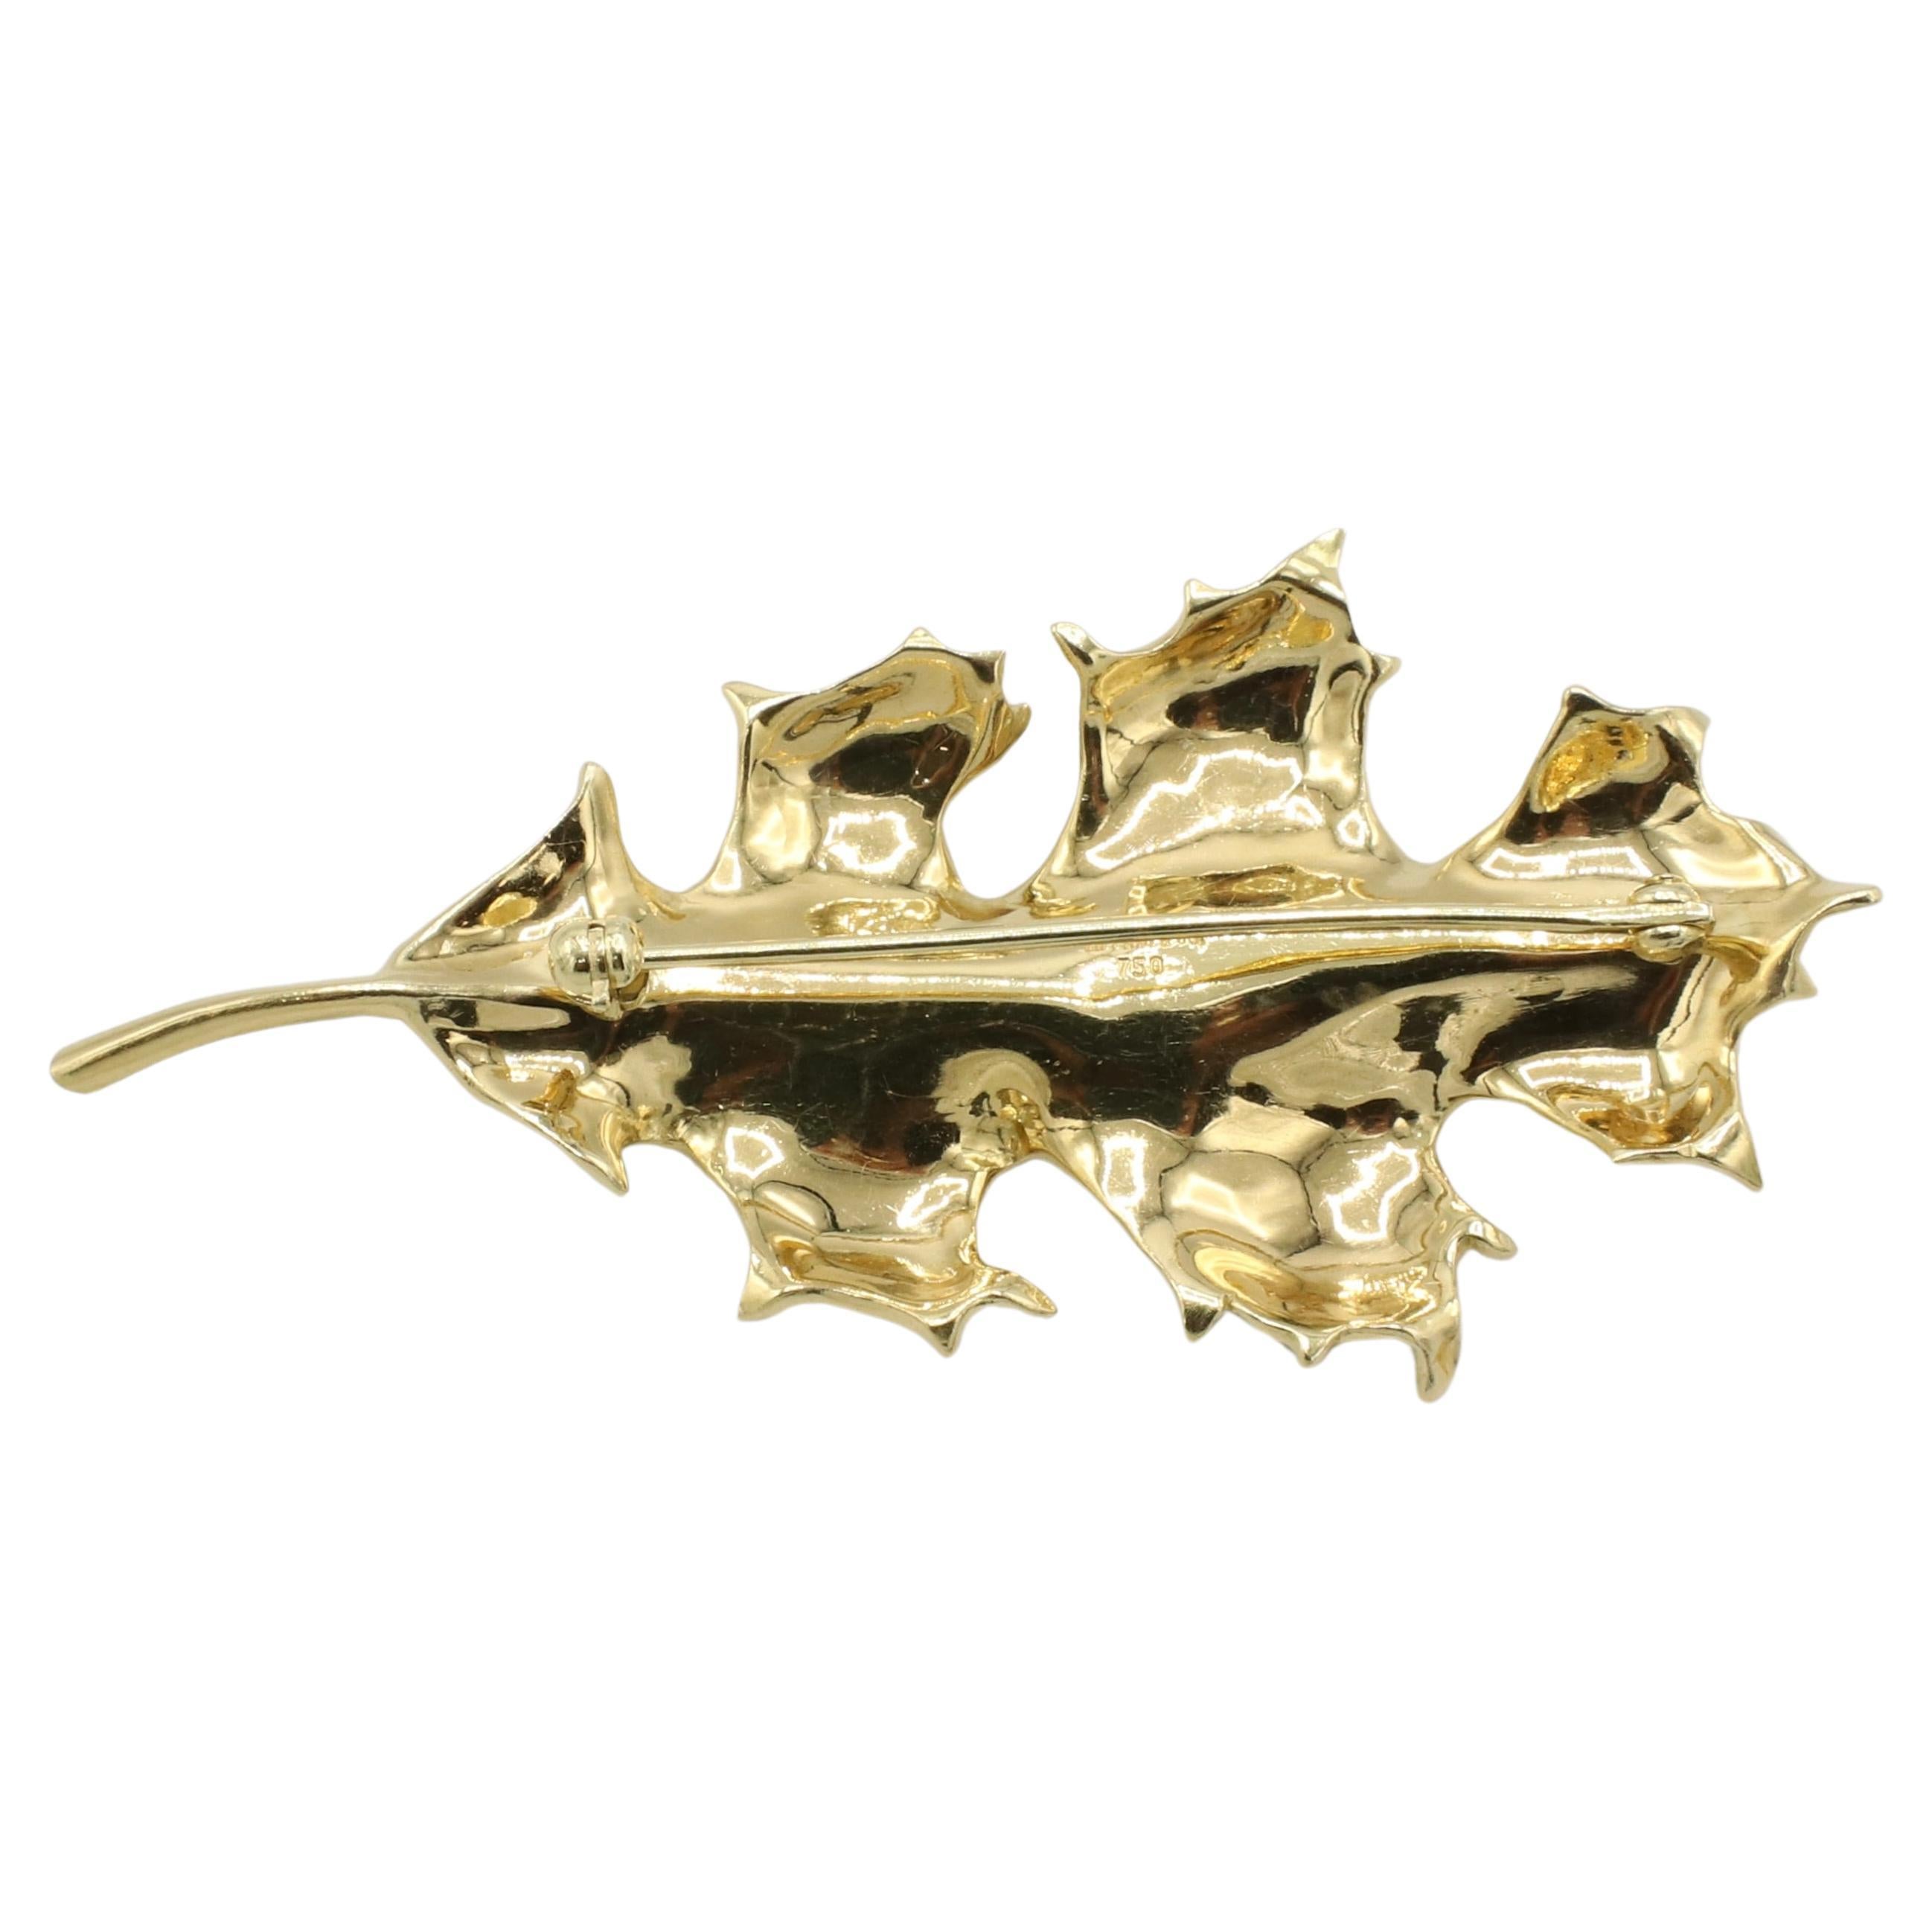 Tiffany & Co. Broche feuille de chêne en or jaune 18 carats 
Métal : or jaune 18k
Poids : 12,67 grammes
Dimensions : 61 x 30.5mm
Signé : Tiffany & Co. 750